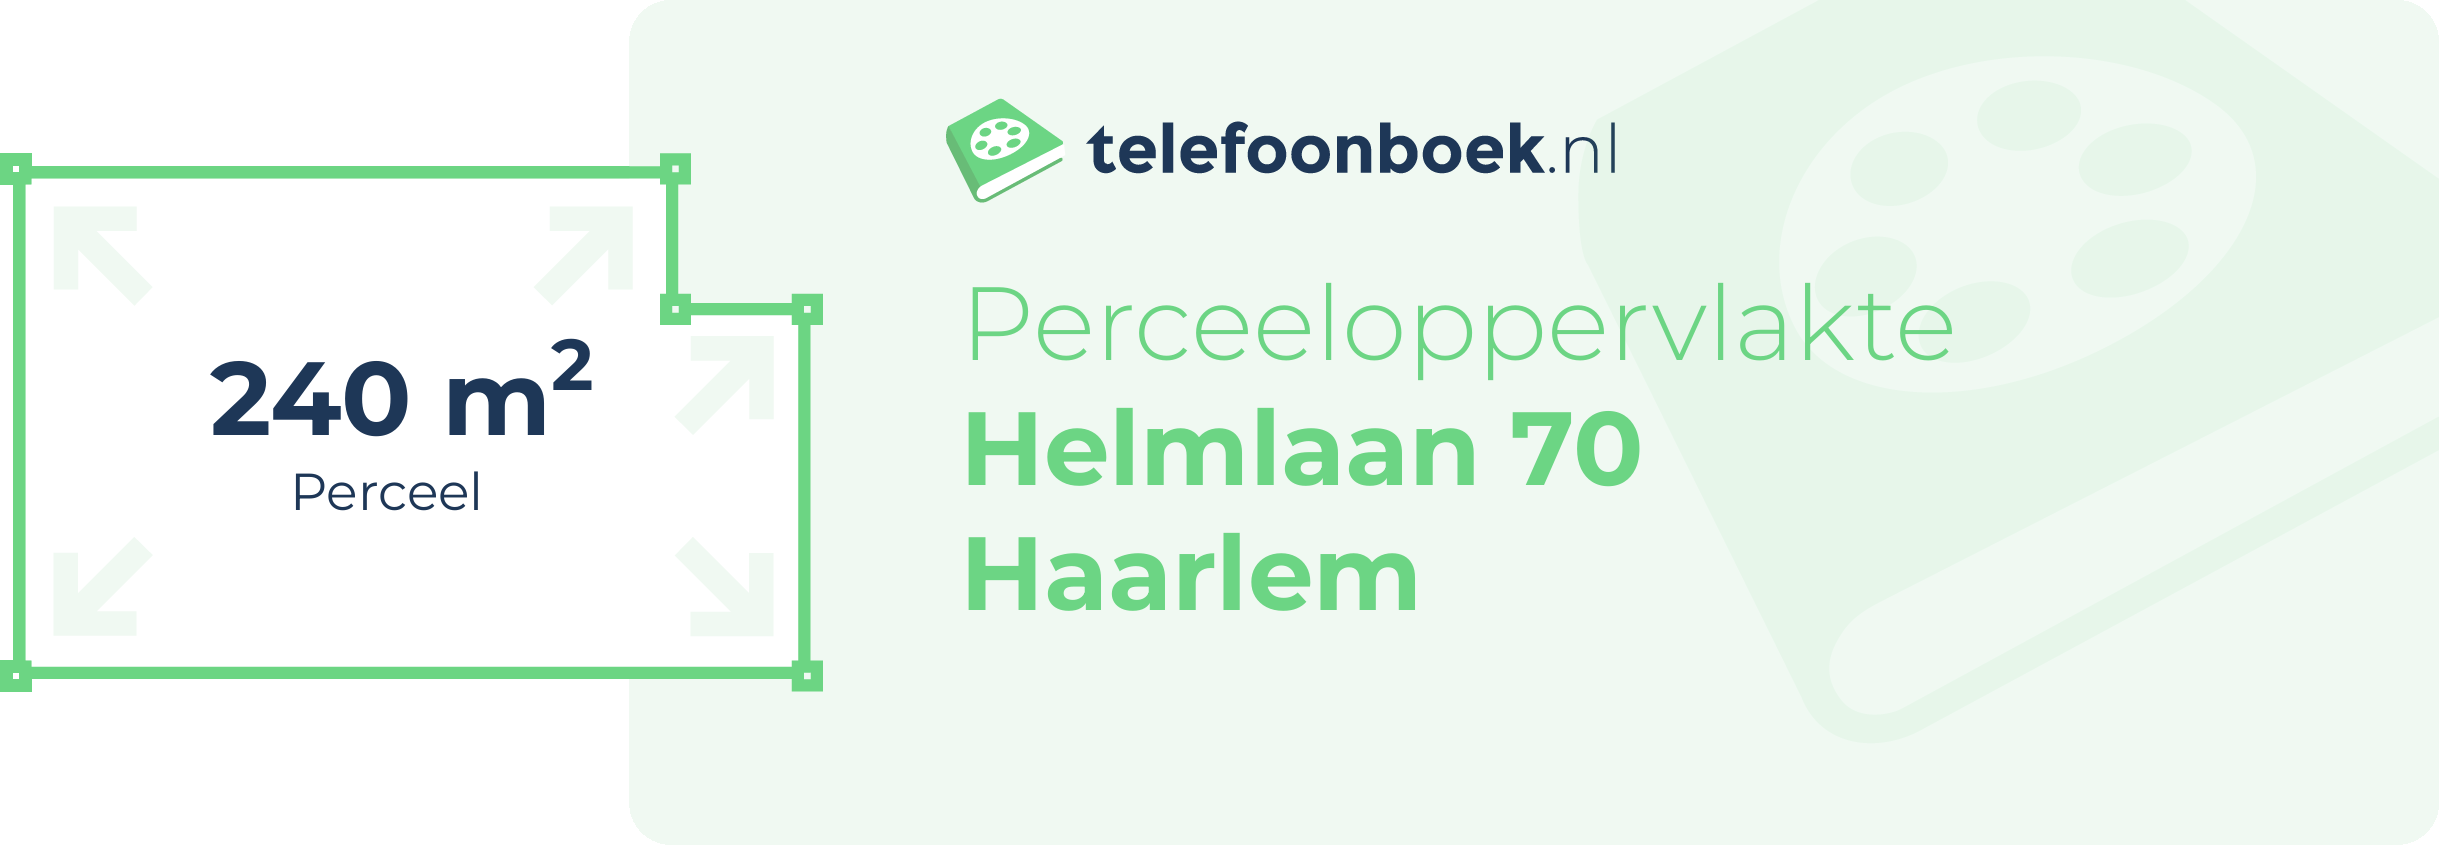 Perceeloppervlakte Helmlaan 70 Haarlem